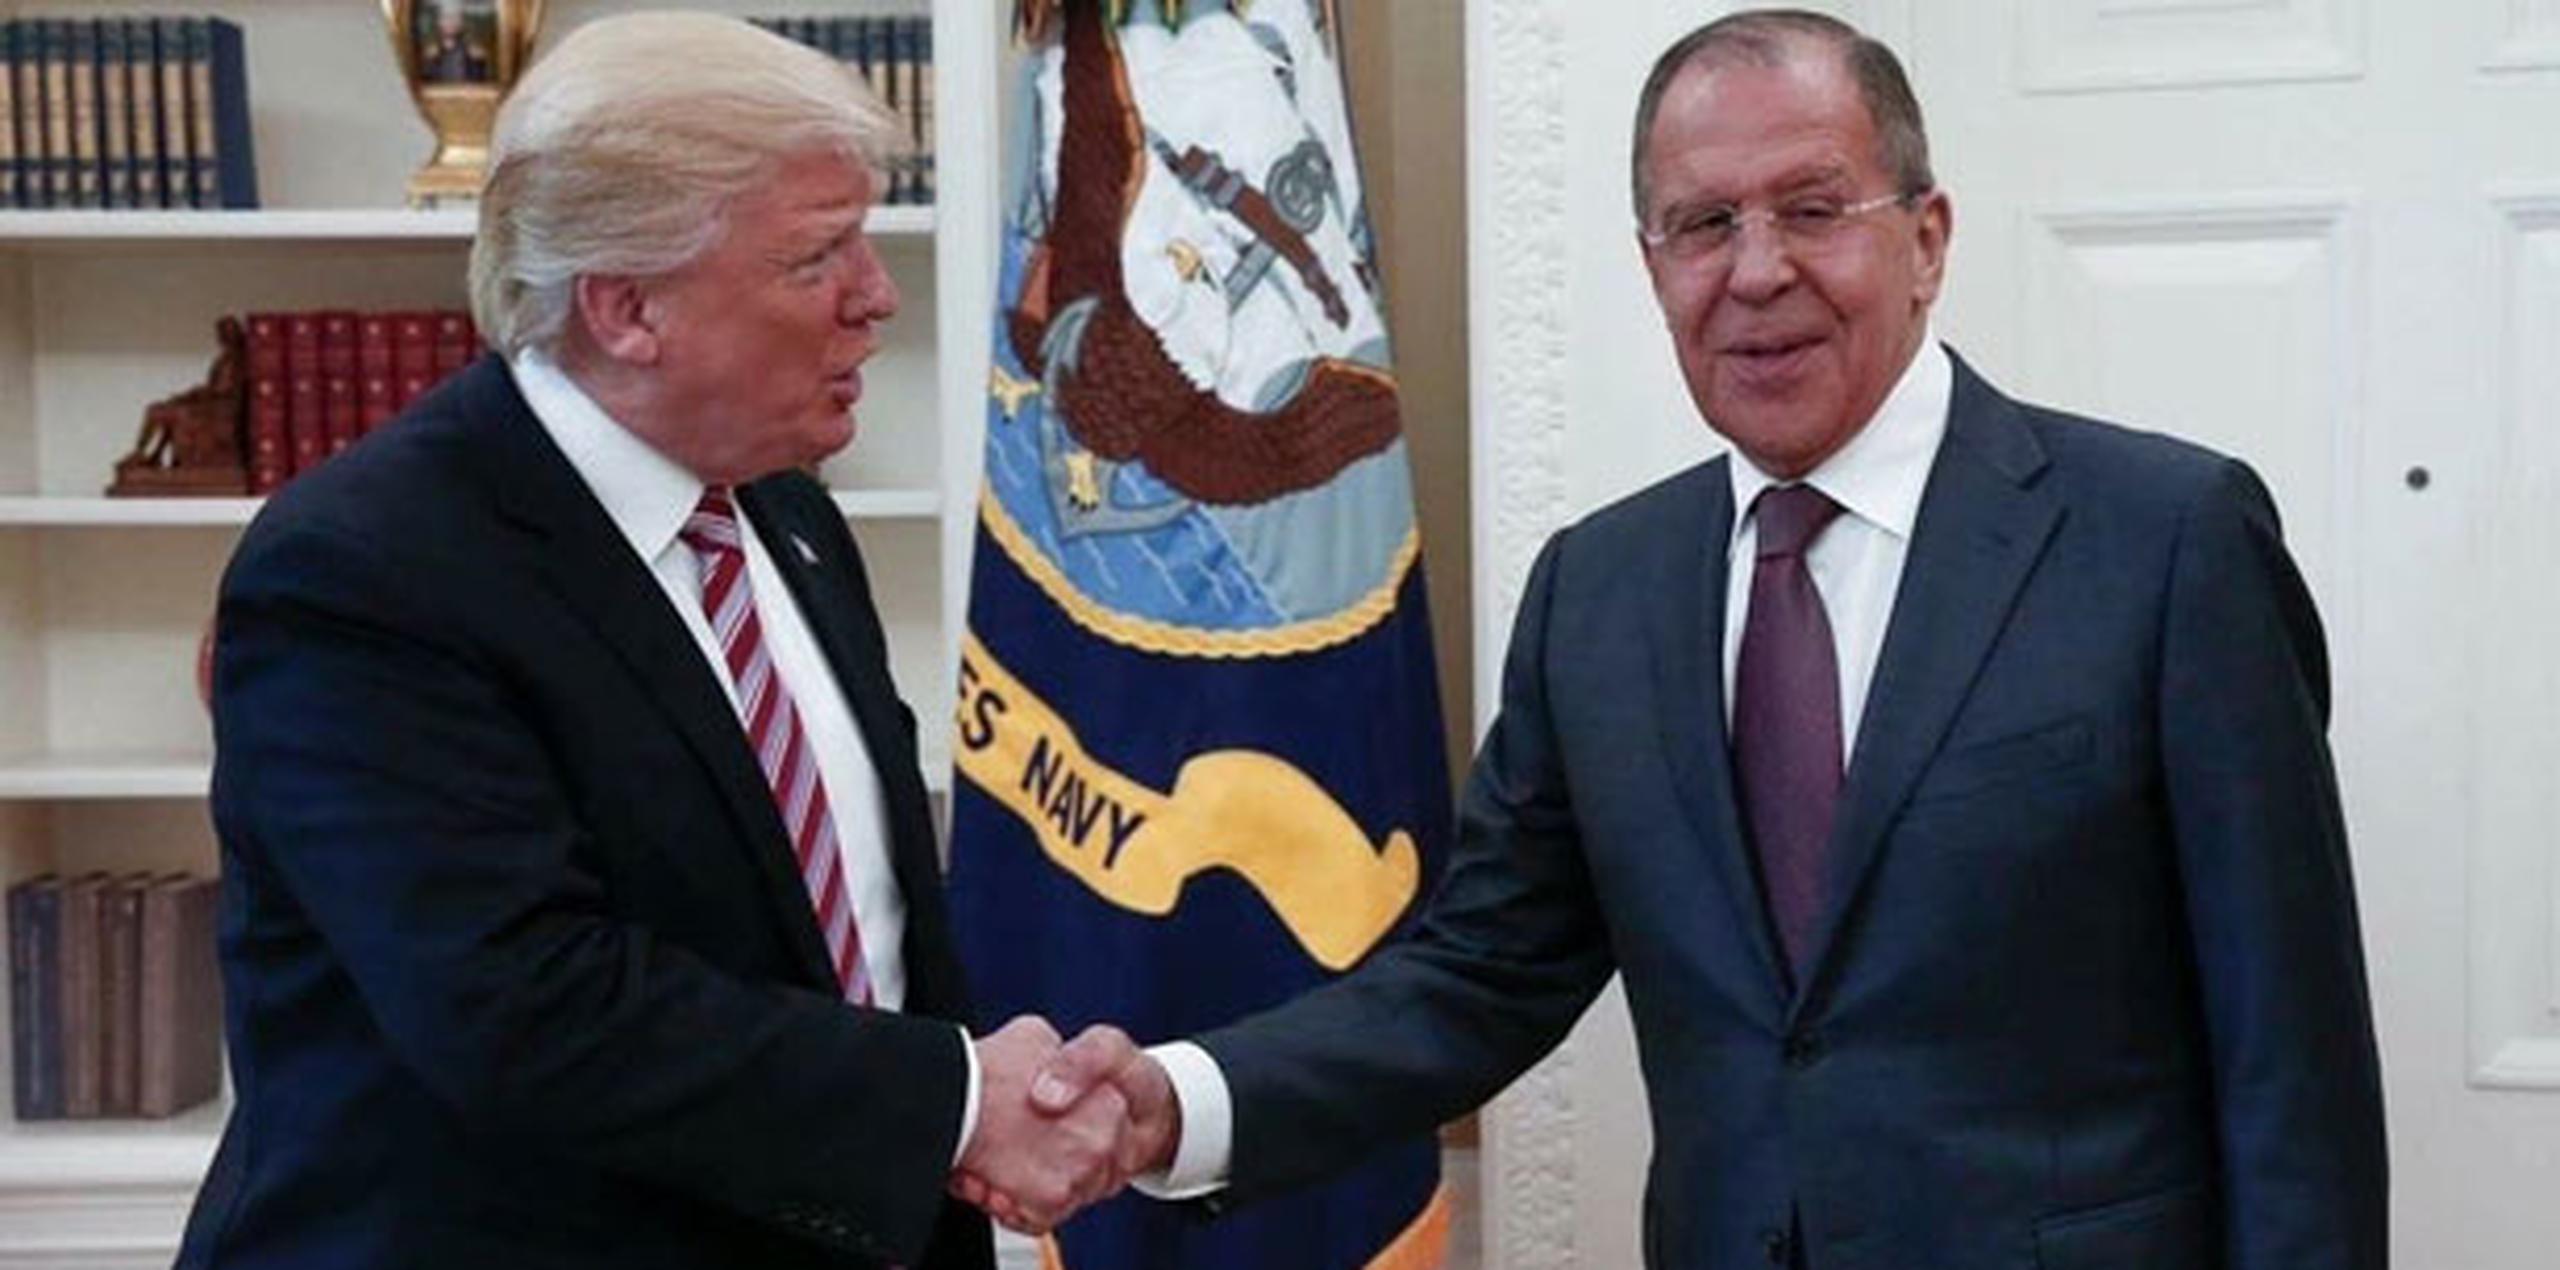 El funcionario estadounidense dijo que Trump se jactó de tener acceso a información confidencial durante su reunión la semana pasada con Lavrov y Kislyak. (Archivo)